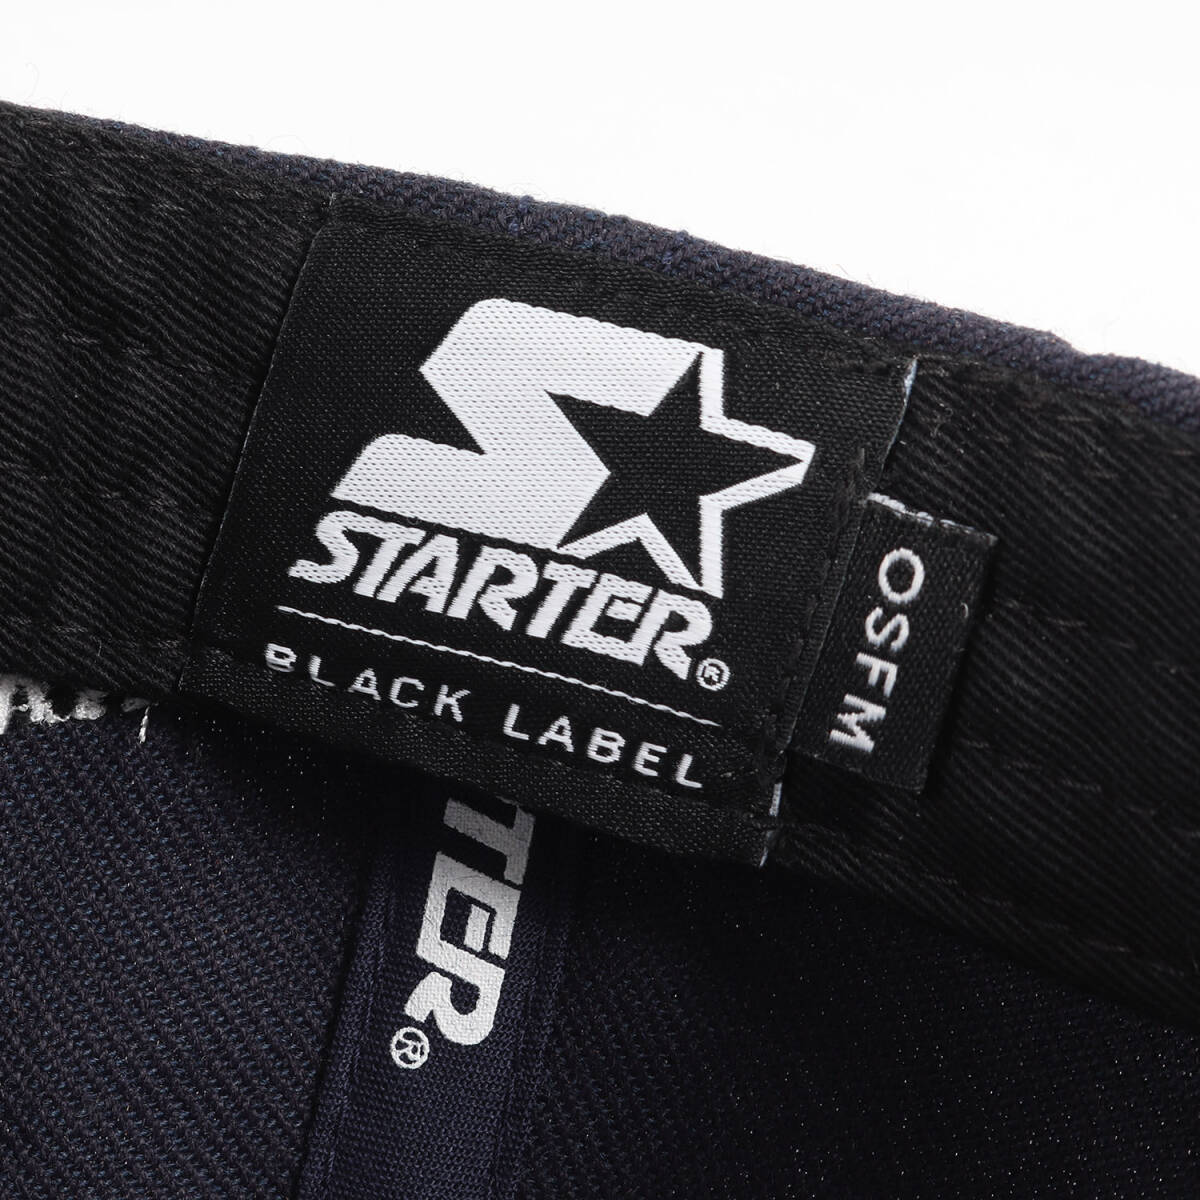 新品 TMT キャップ 19AW STARTER BLACK LABEL ブランドロゴ 6パネルキャップ ネイビー 紺 ブランド 帽子 スナップバック_画像5